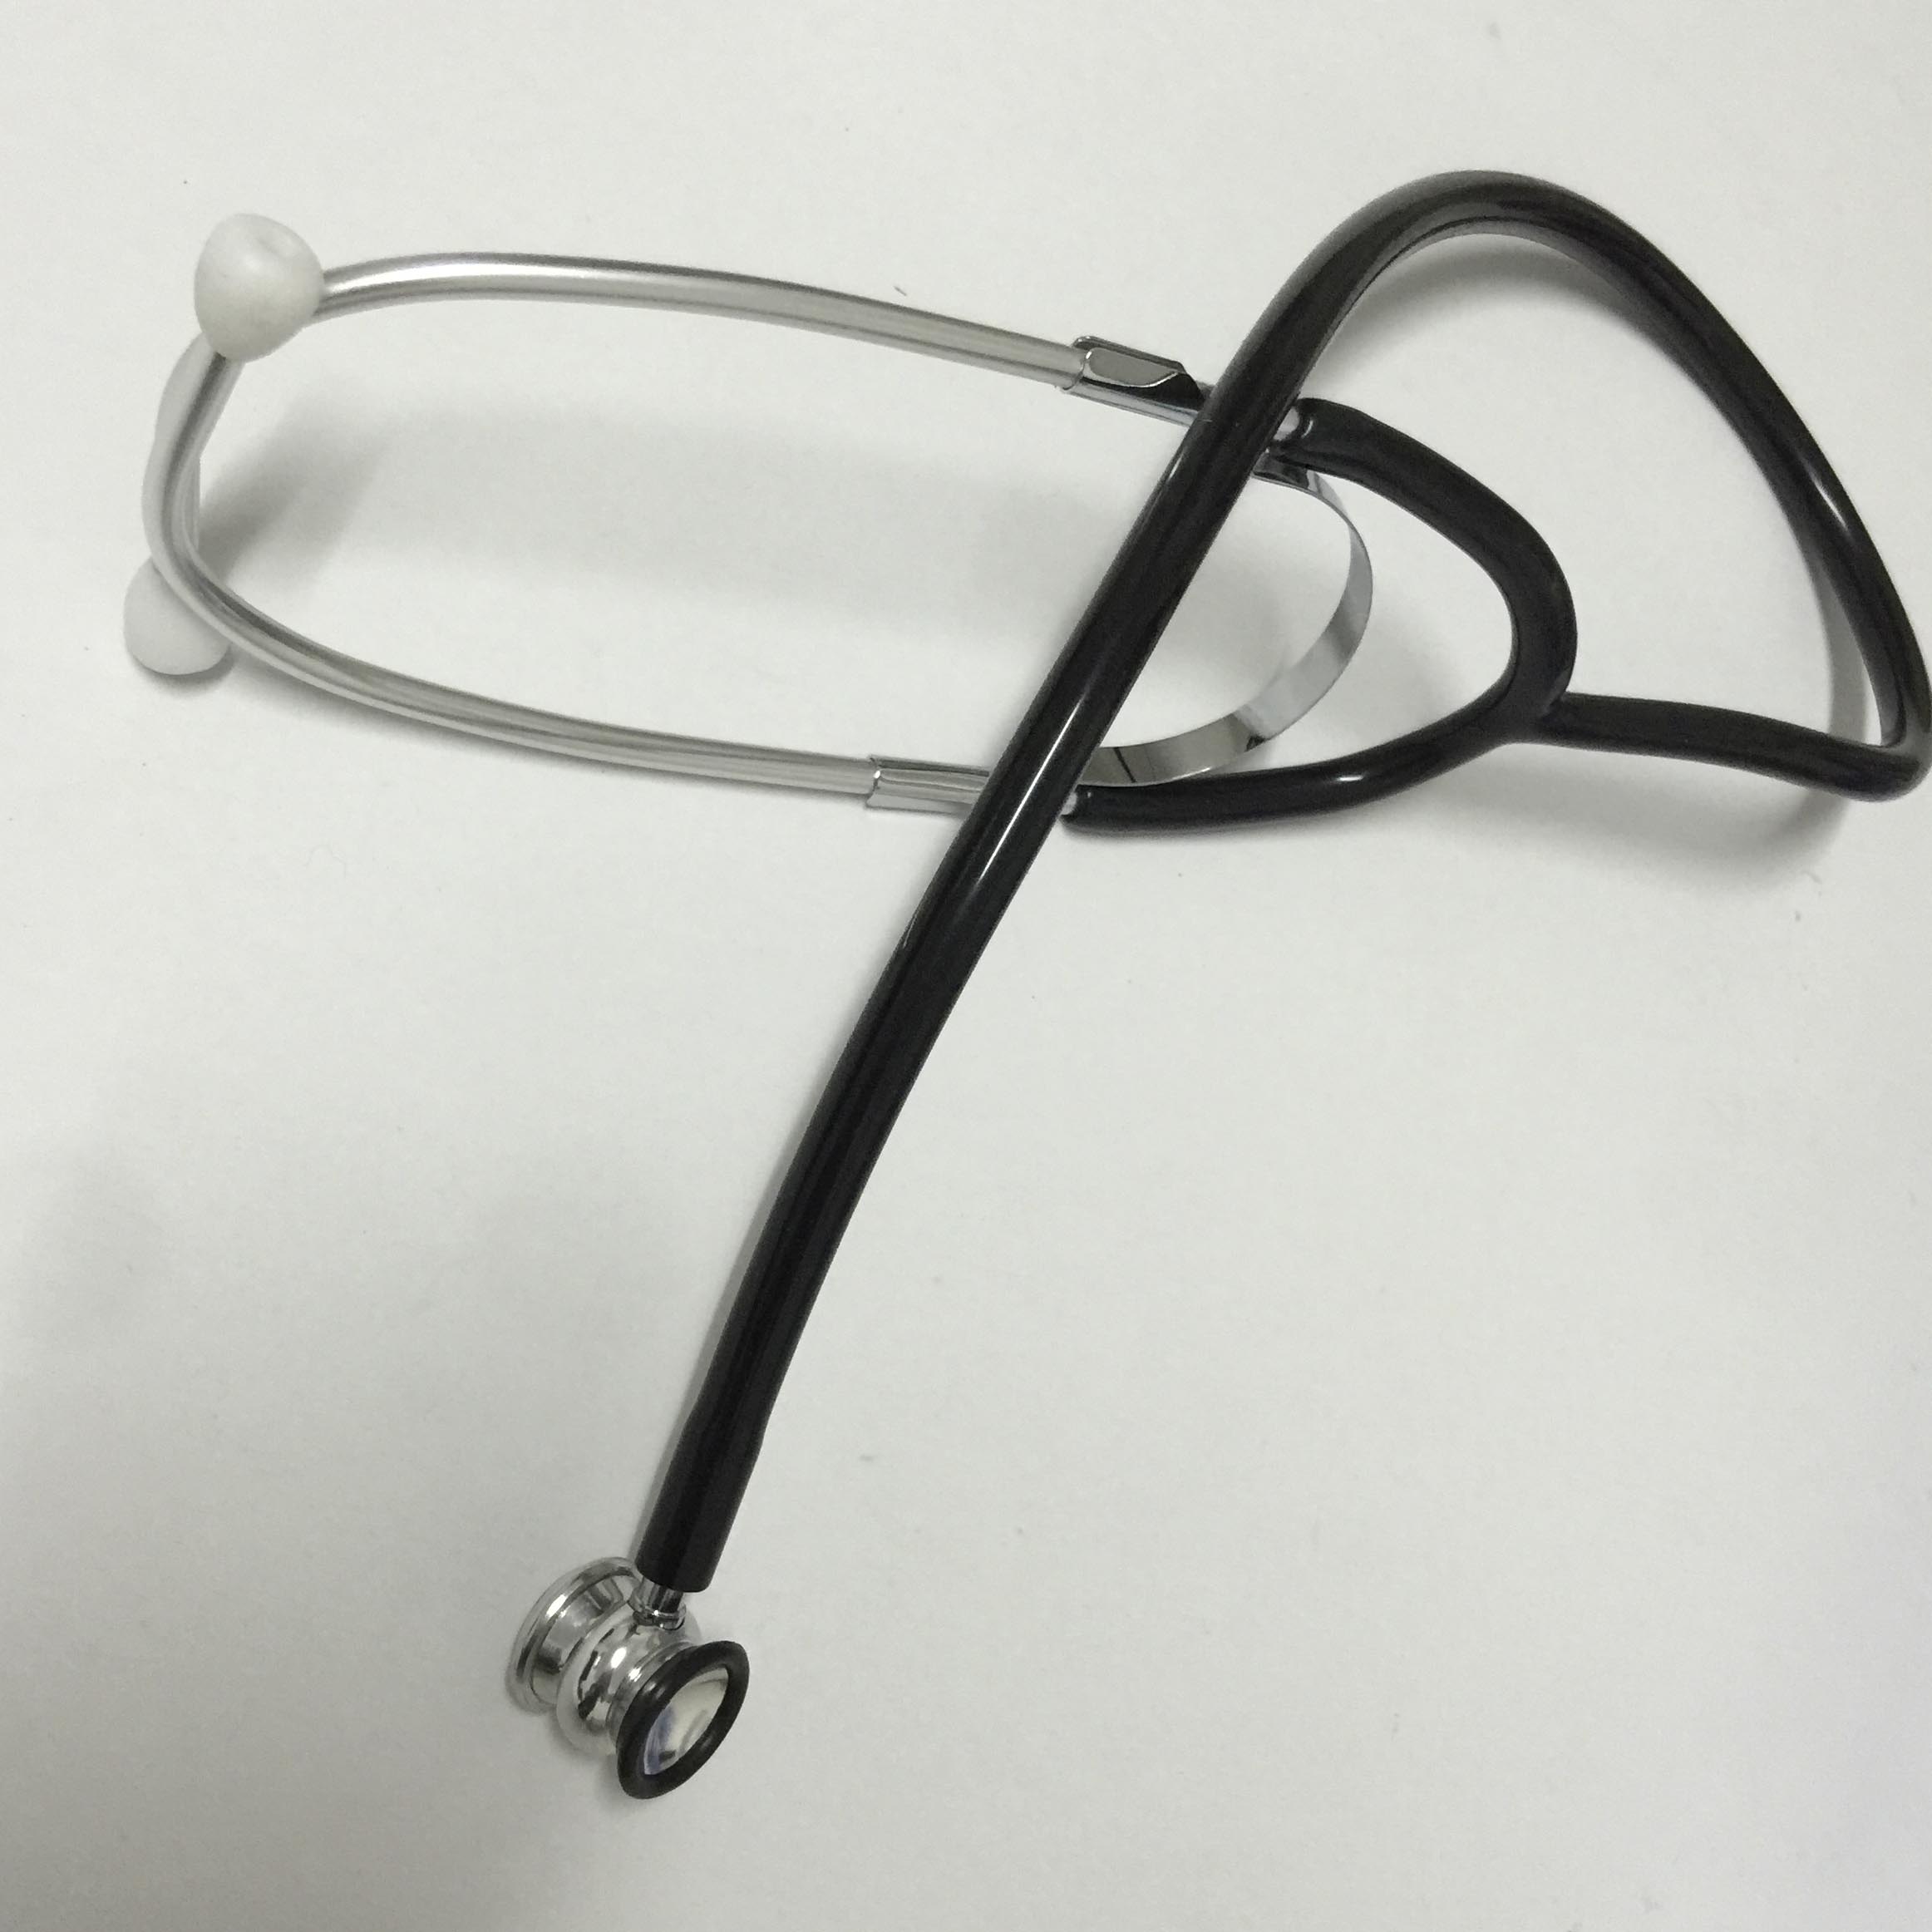 Infant Type Stethoscope